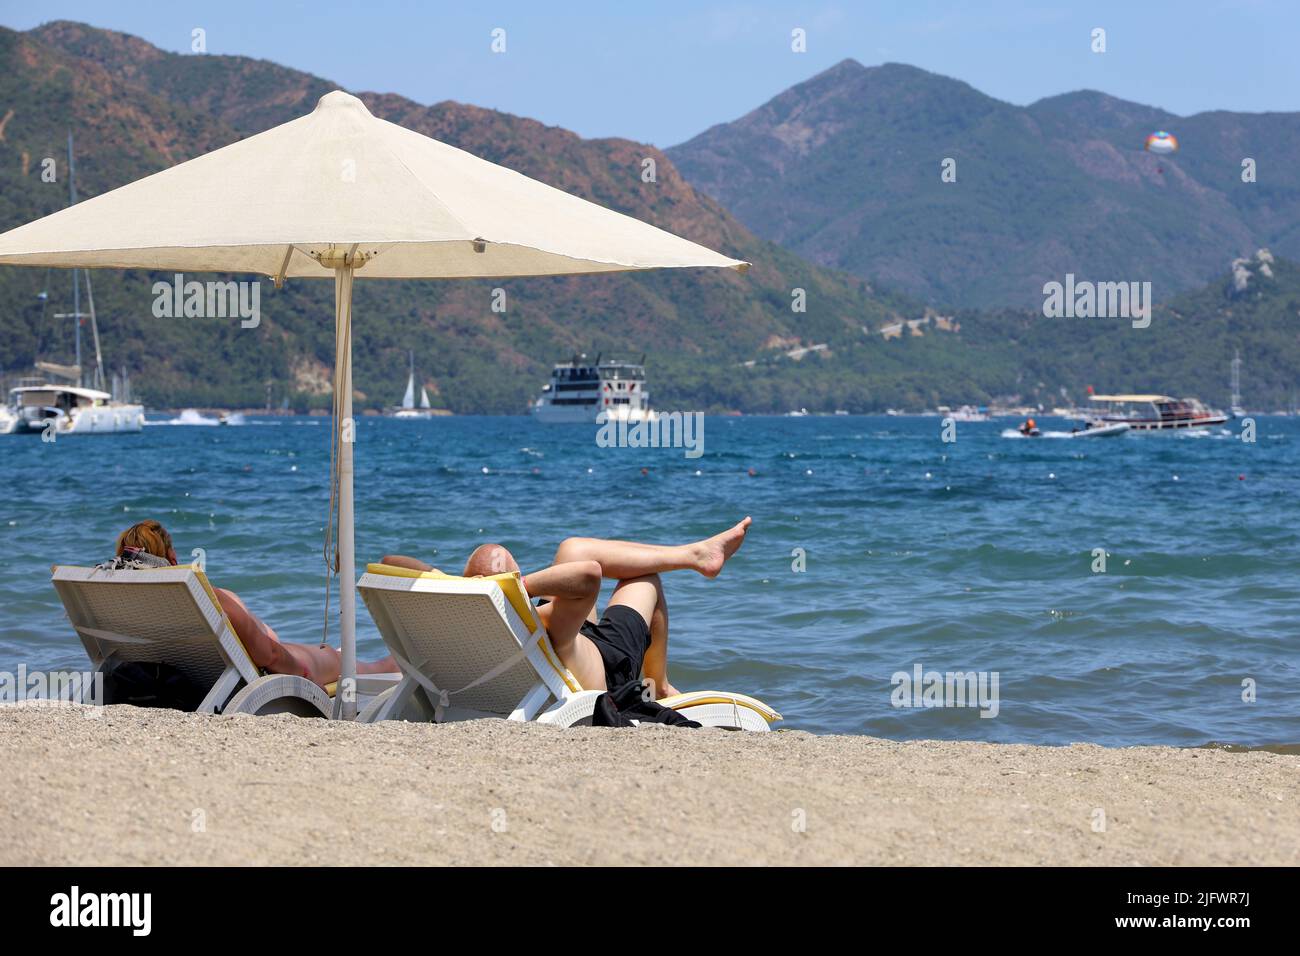 Pareja bronceándose en una playa en un resort de verano. Hombre y mujer tumbados en sillas de terraza bajo una sombrilla sobre las olas del mar y el fondo de la costa de montaña Foto de stock